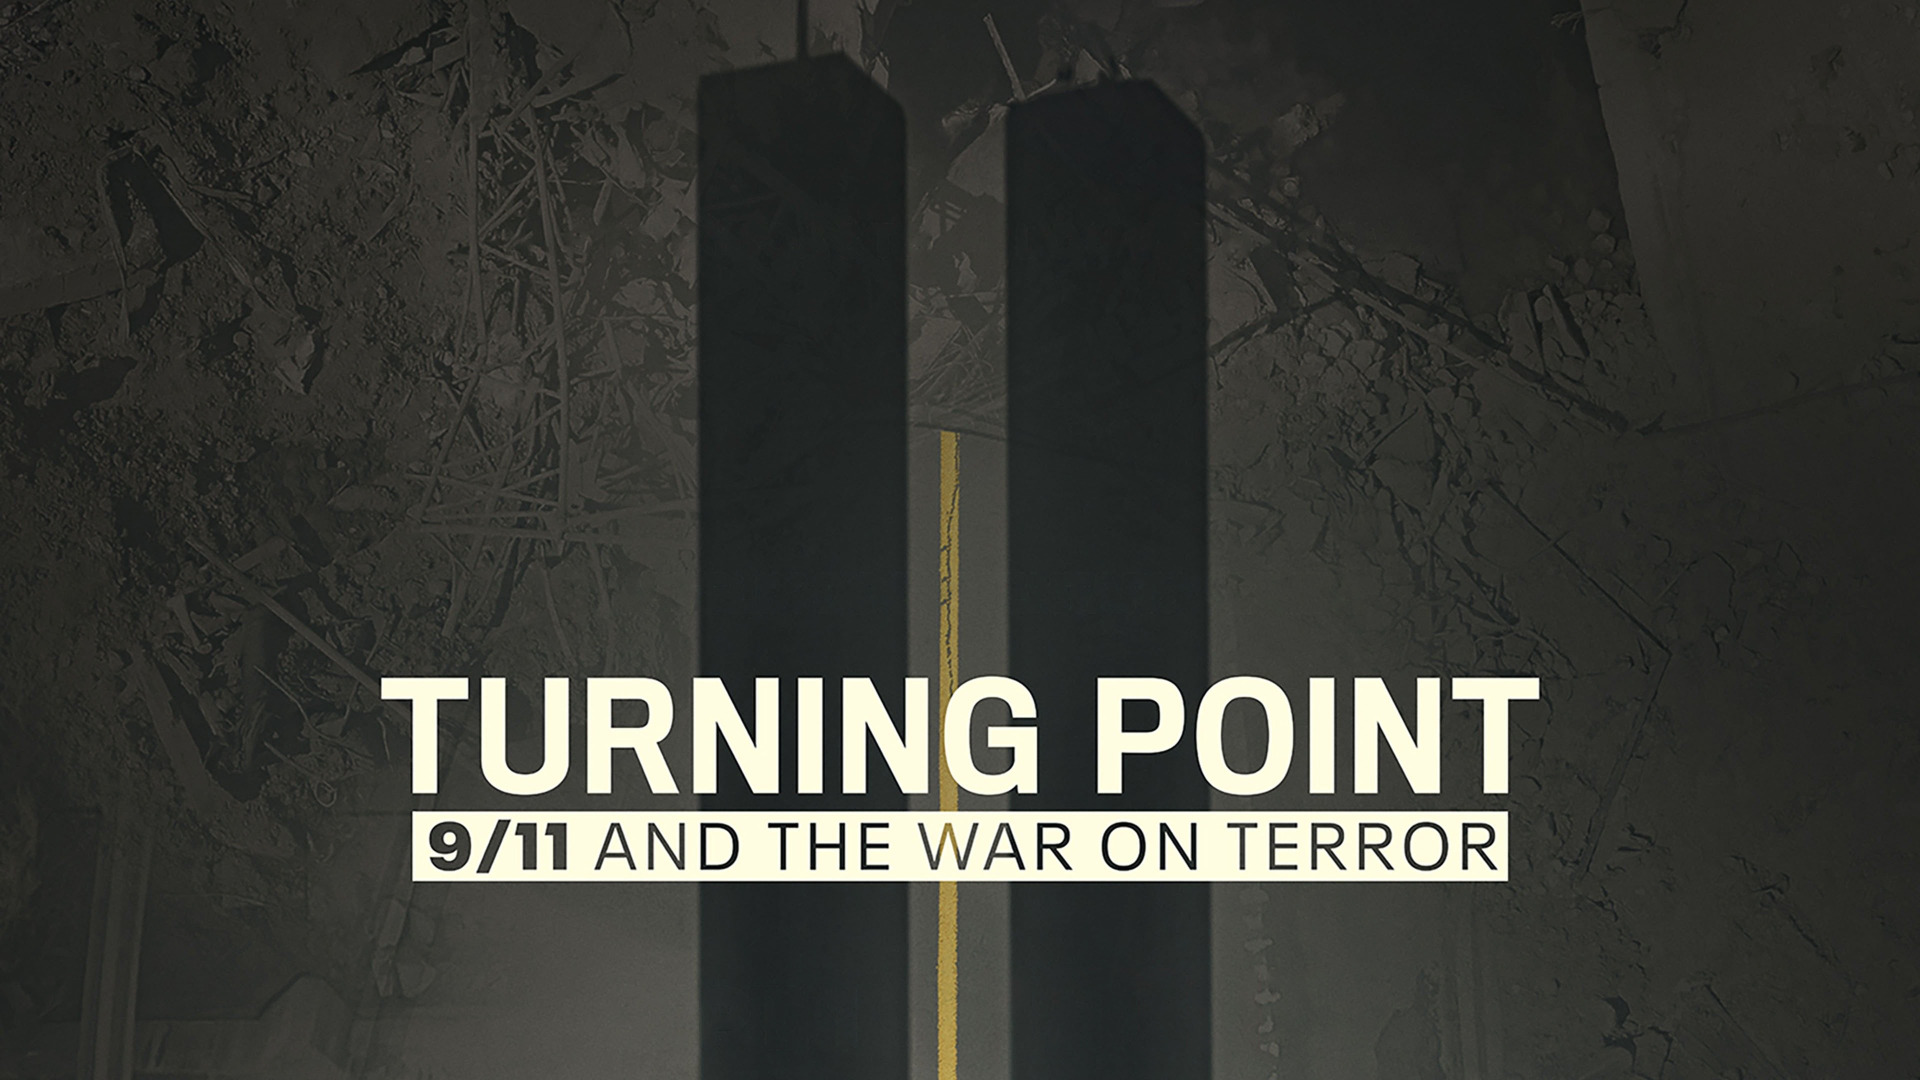 Сериал Поворотный момент: 11 сентября и война с терроризмом